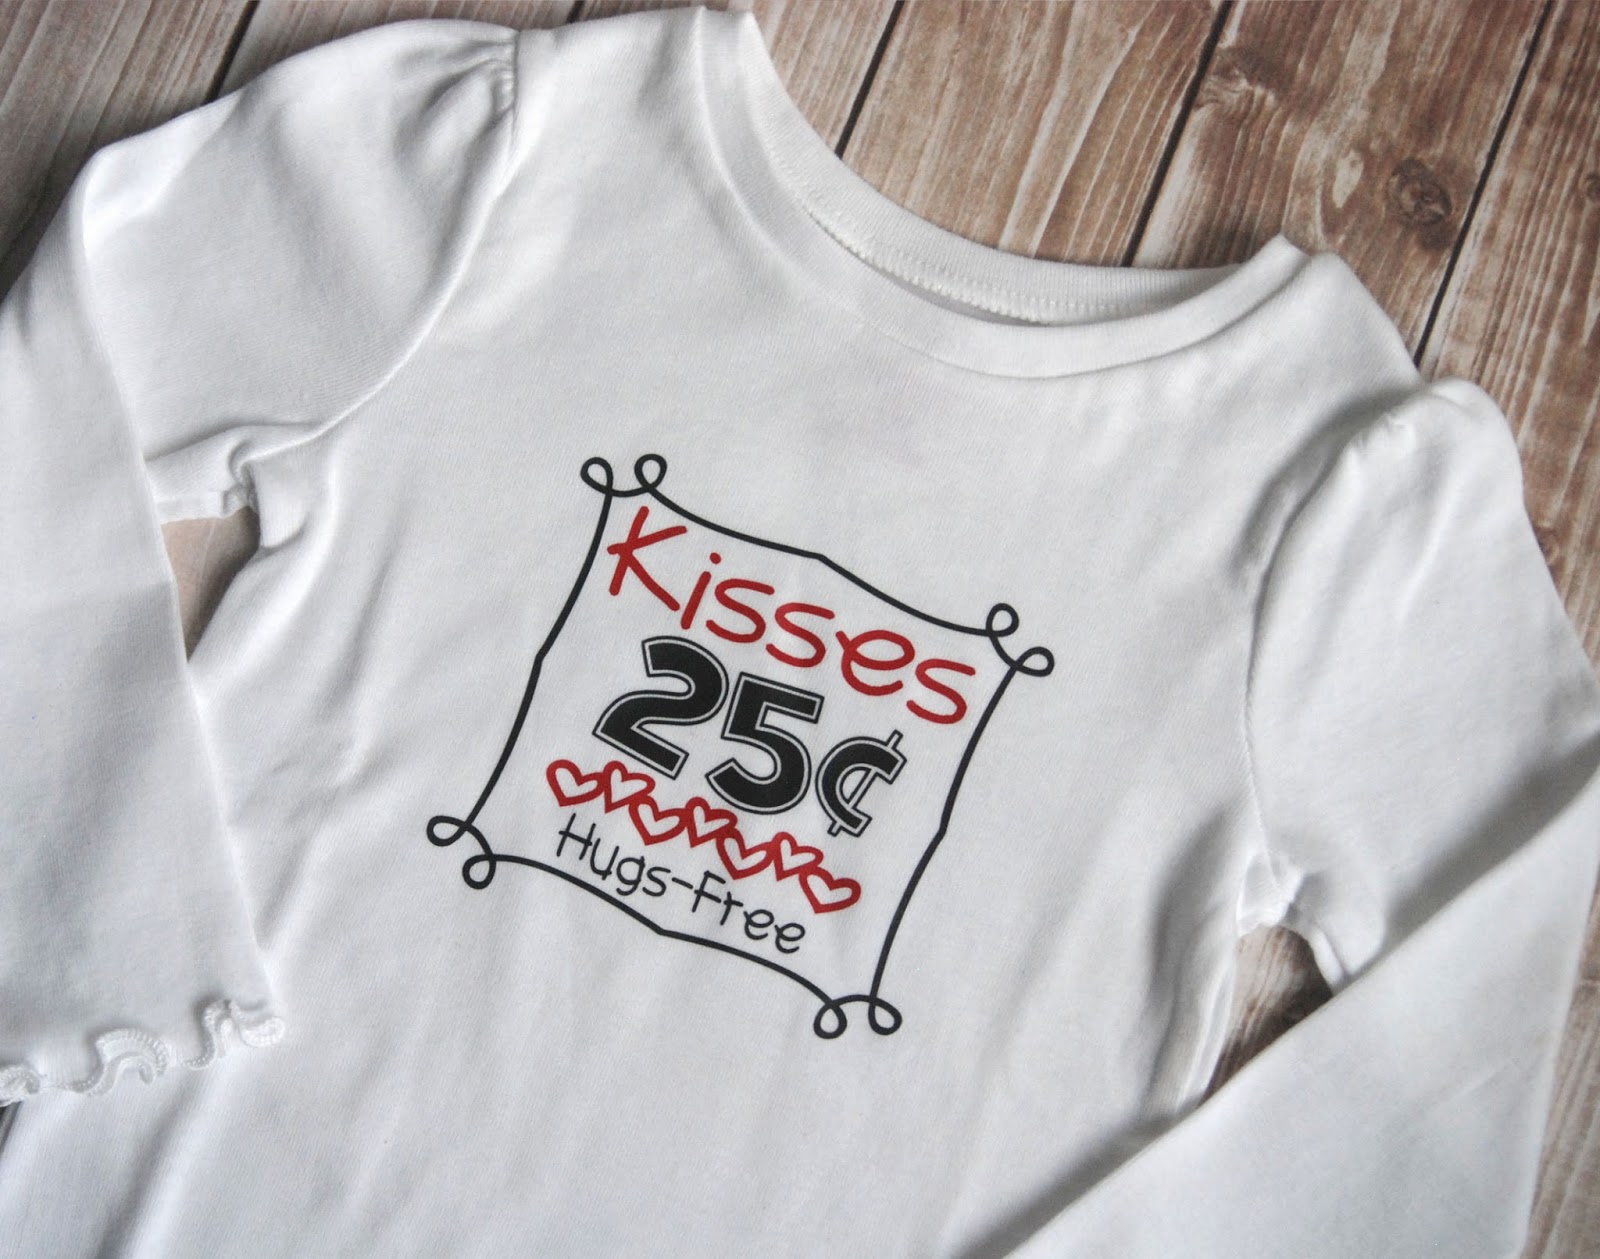 Download Kisses for Sale T-Shirt plus Free SVG Cut File - Burton Avenue